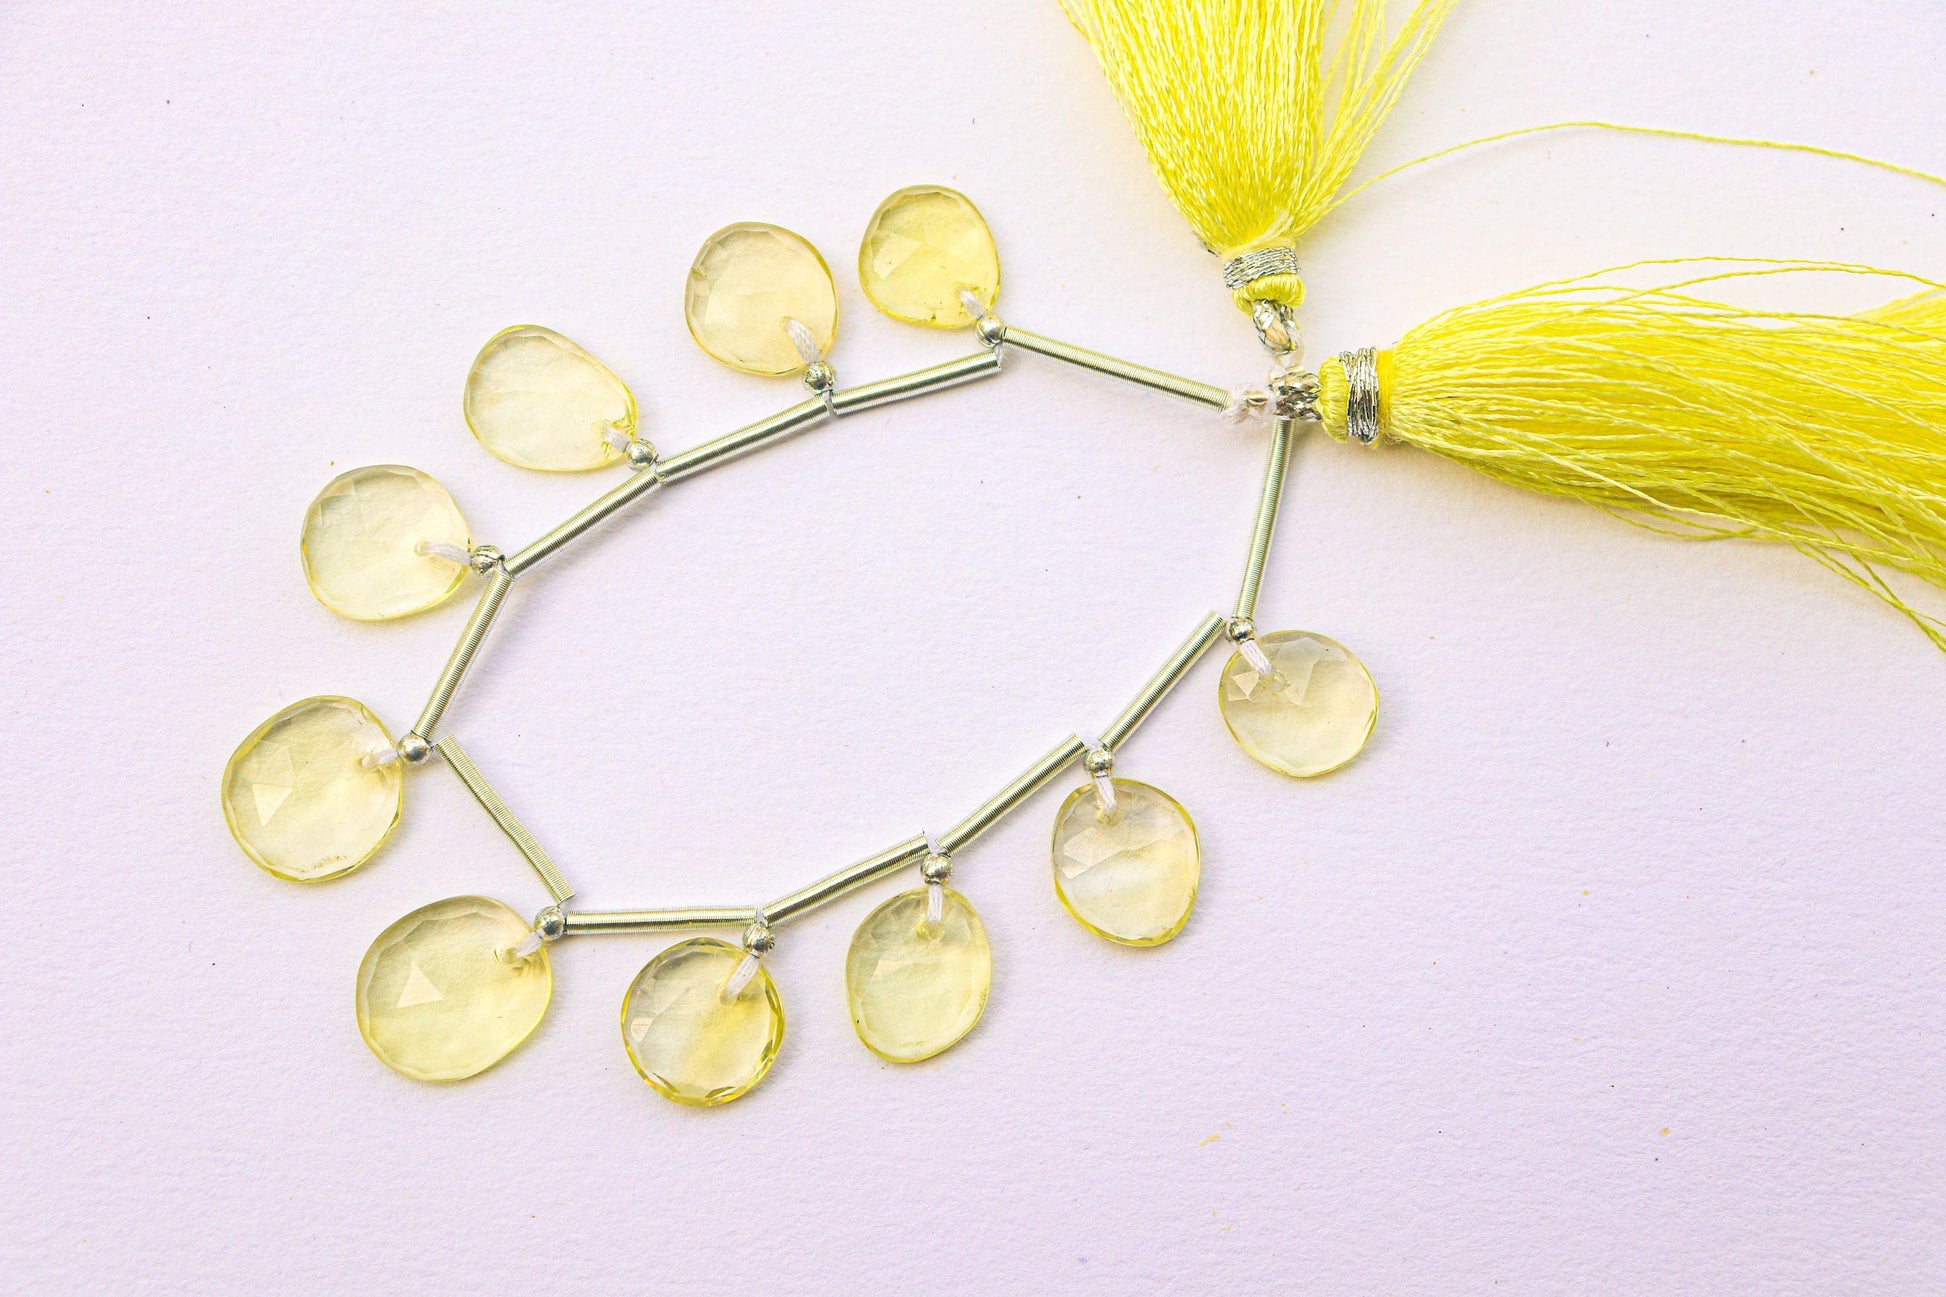 Lemon Quartz Faceted Uneven Shape Rose cut Briolette Beads | 10 Pieces | Natural Lemon quartz Gemstone Beads | Beadsforyourjewelry BFYJ1196-3 Beadsforyourjewelry